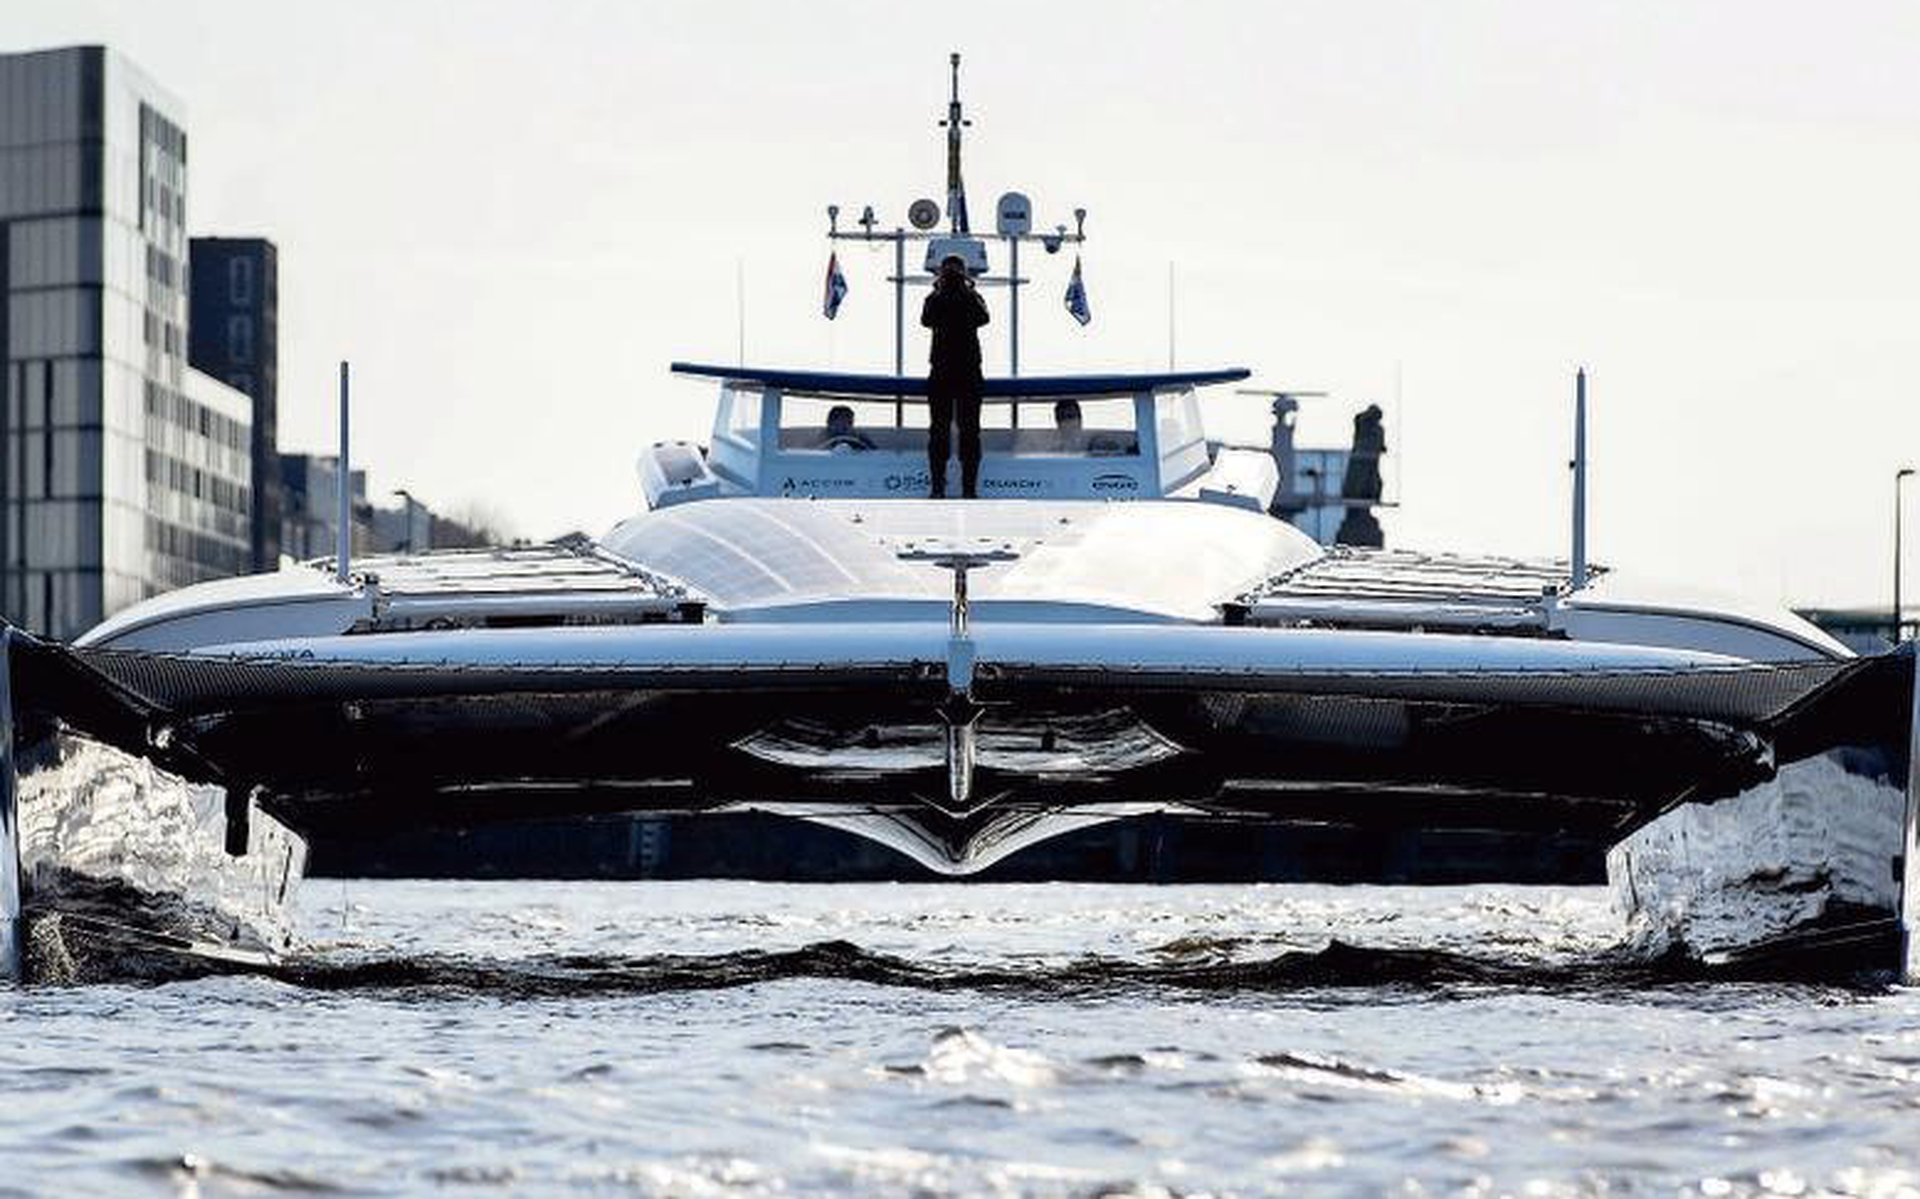 De Energy Observer voer op 5 april binnen in Amsterdam. Ondertussen is de catamaran voorzien van twee 12 meter hoge windvleugels. FOTO EPA